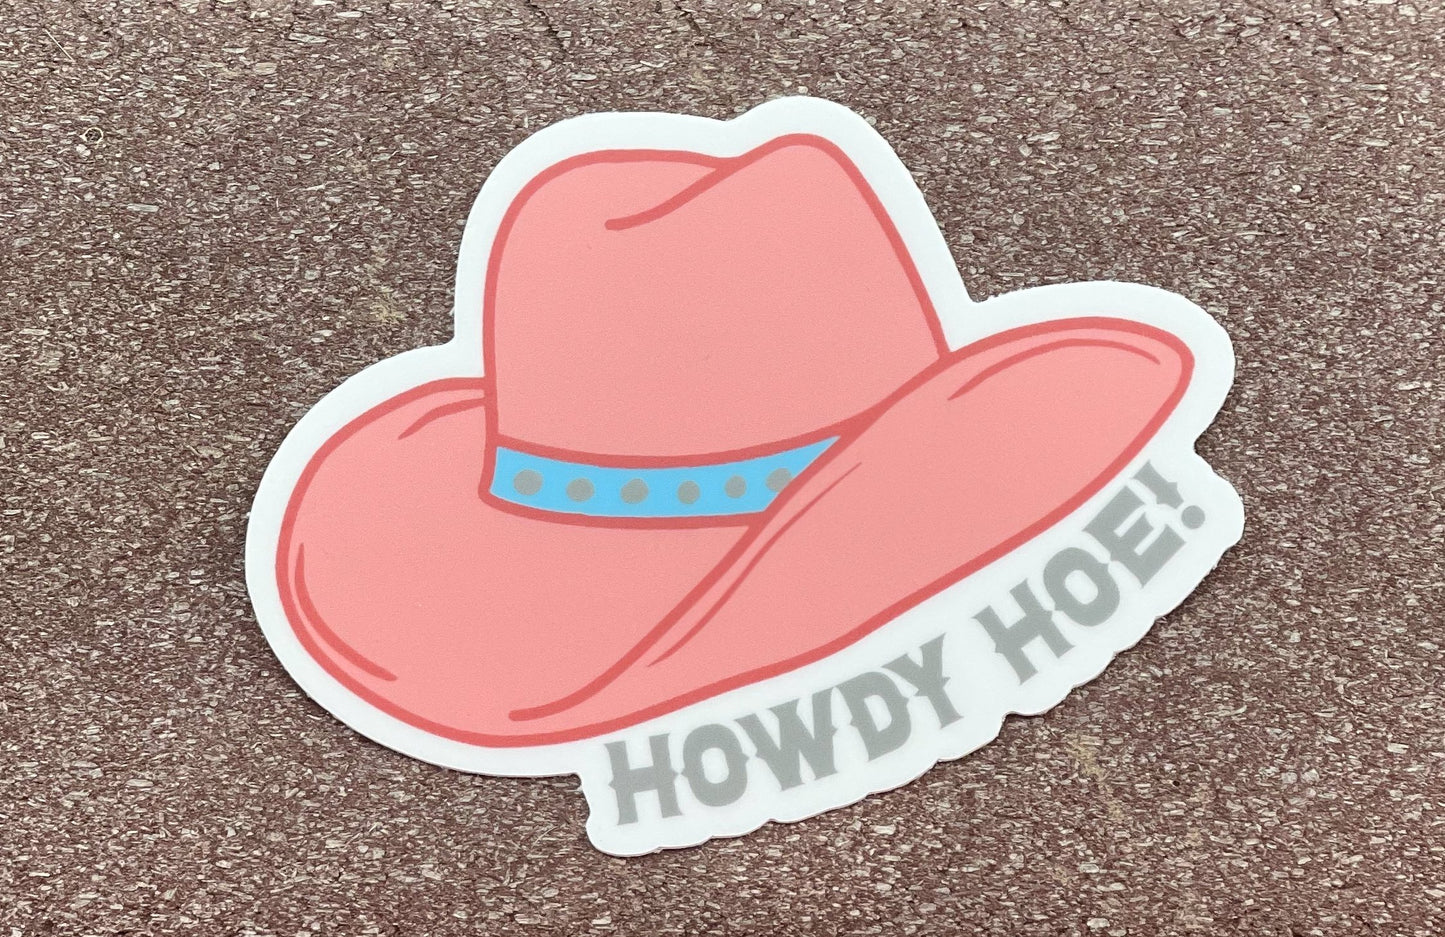 Howdy Hoe Sticker